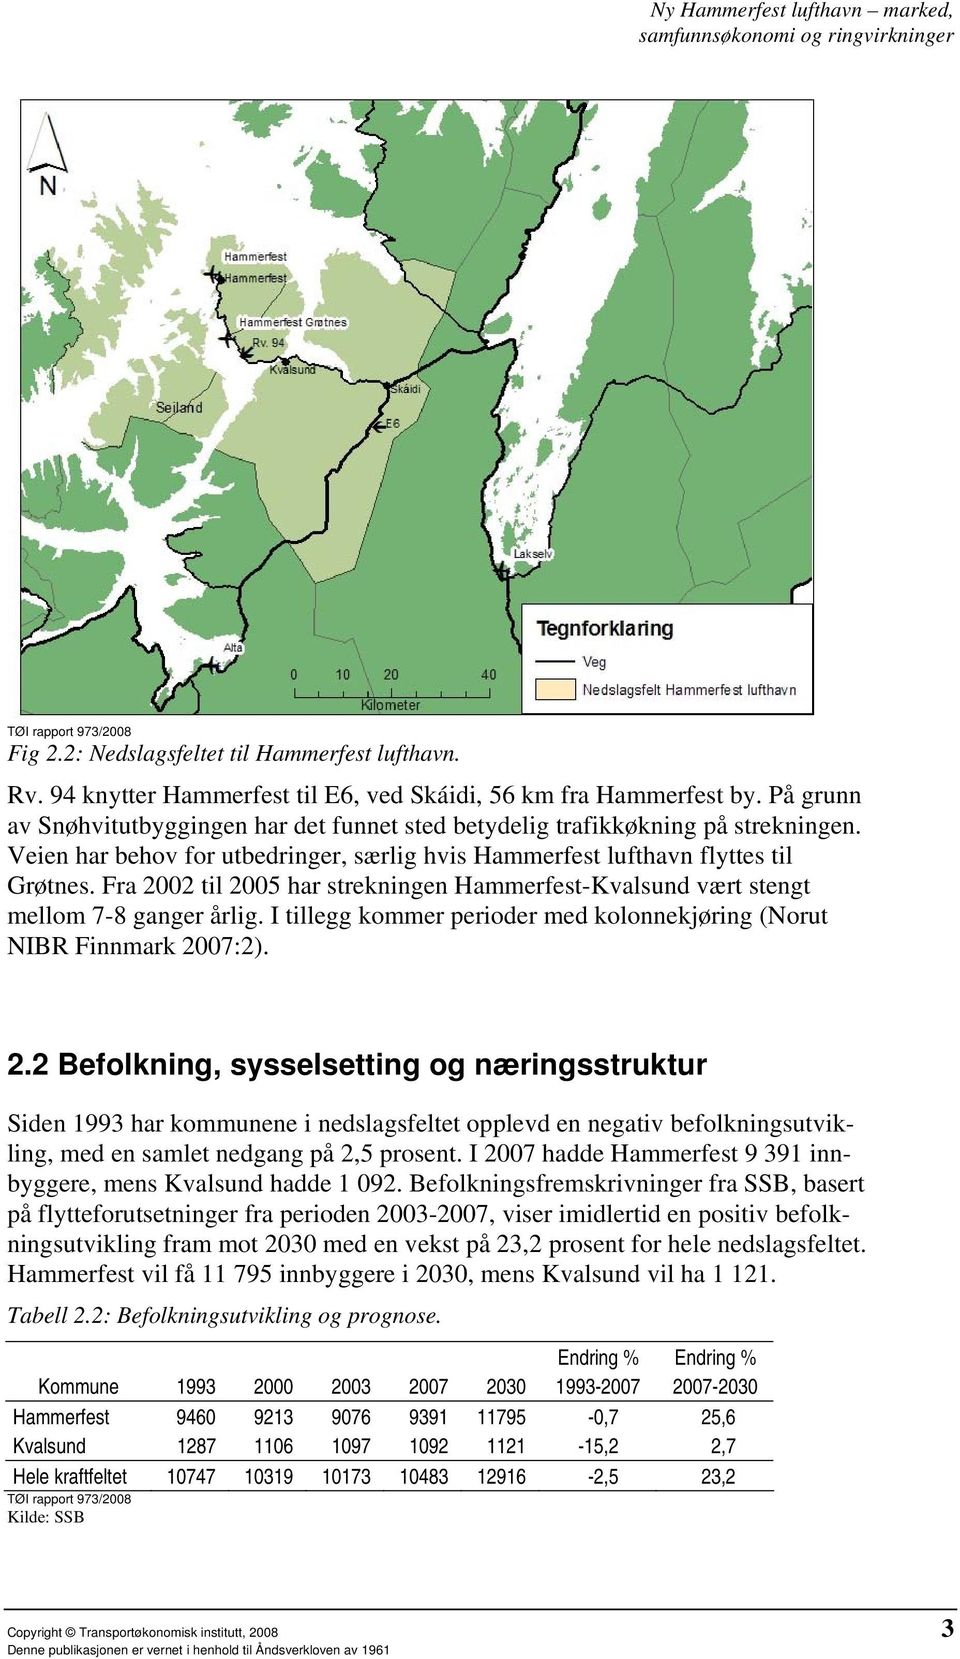 Fra 2002 til 2005 har strekningen Hammerfest-Kvalsund vært stengt mellom 7-8 ganger årlig. I tillegg kommer perioder med kolonnekjøring (Norut NIBR Finnmark 2007:2). 2.2 Befolkning, sysselsetting og næringsstruktur Siden 1993 har kommunene i nedslagsfeltet opplevd en negativ befolkningsutvikling, med en samlet nedgang på 2,5 prosent.